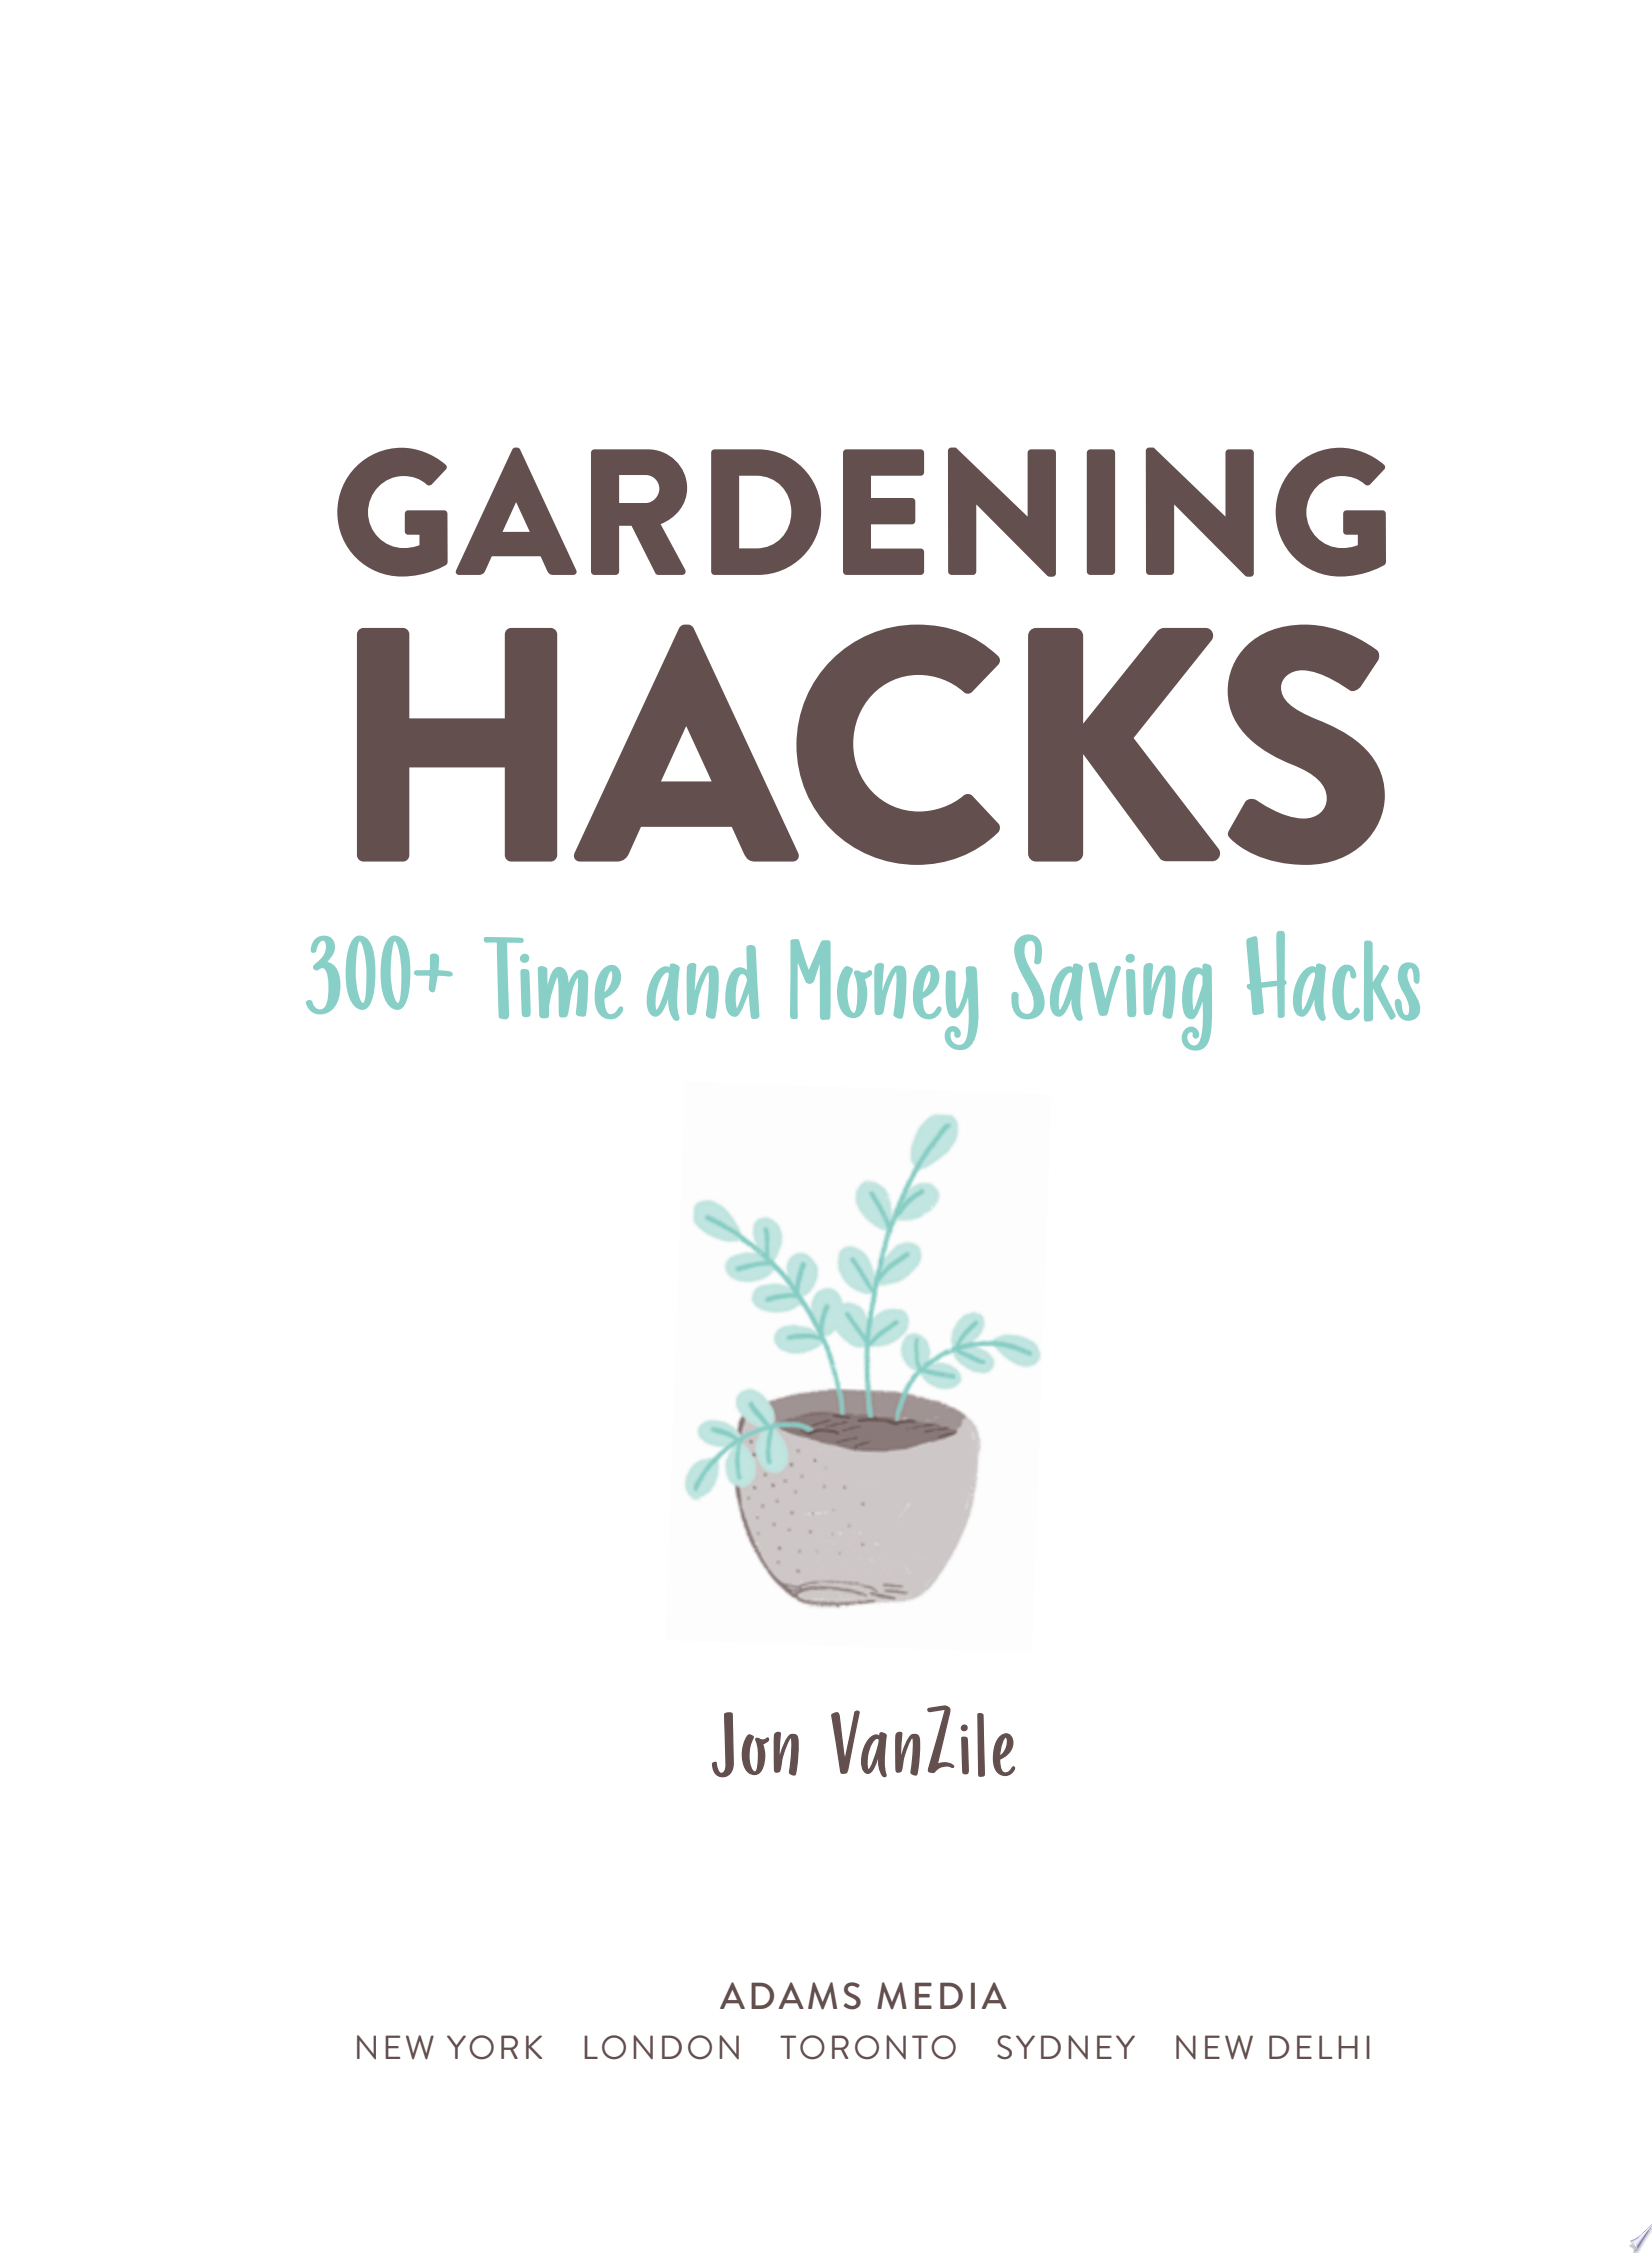 Image for "Gardening Hacks"